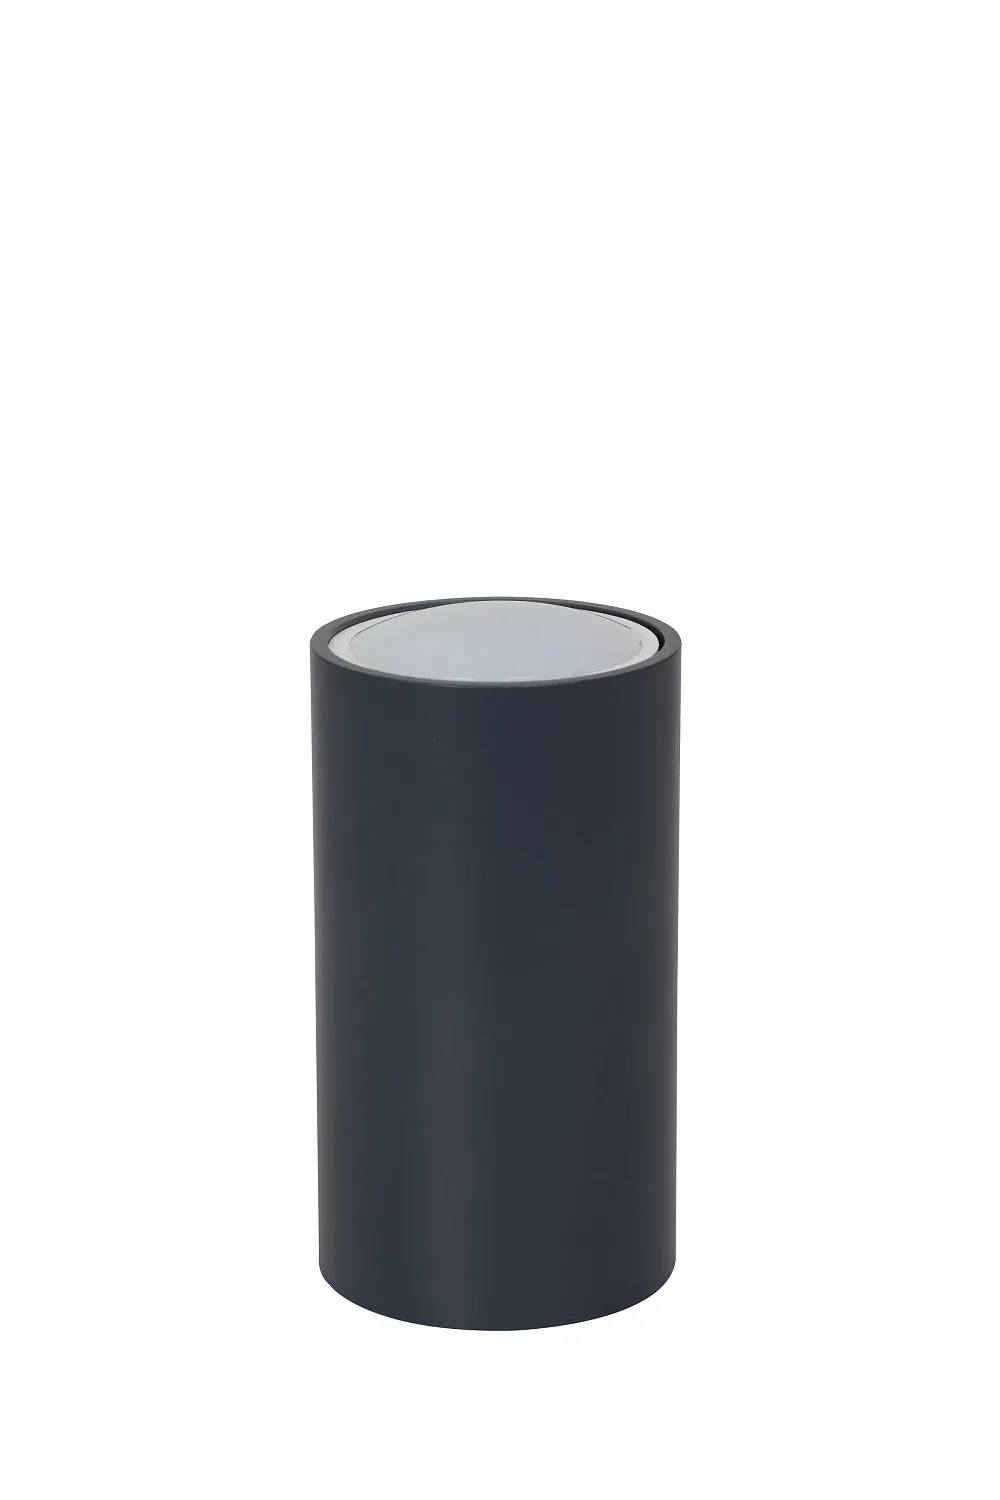 Потолочный светильник ЭРА OL15 GU10 DG, 55*100, накладной, темно-серый 1/40